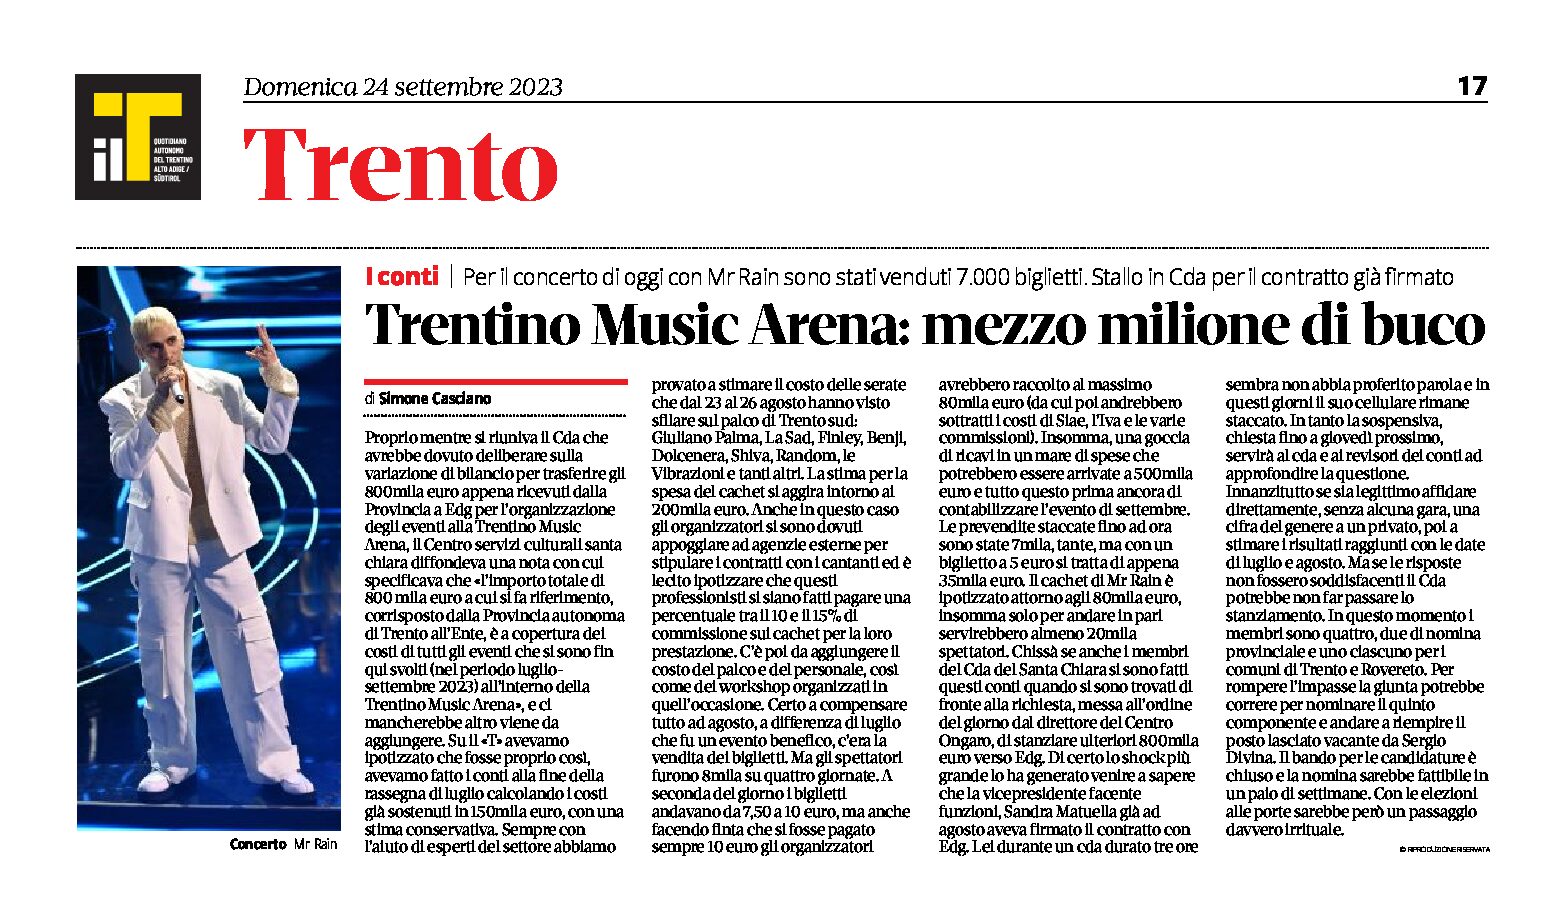 Trentino Music Arena: mezzo milione di buco